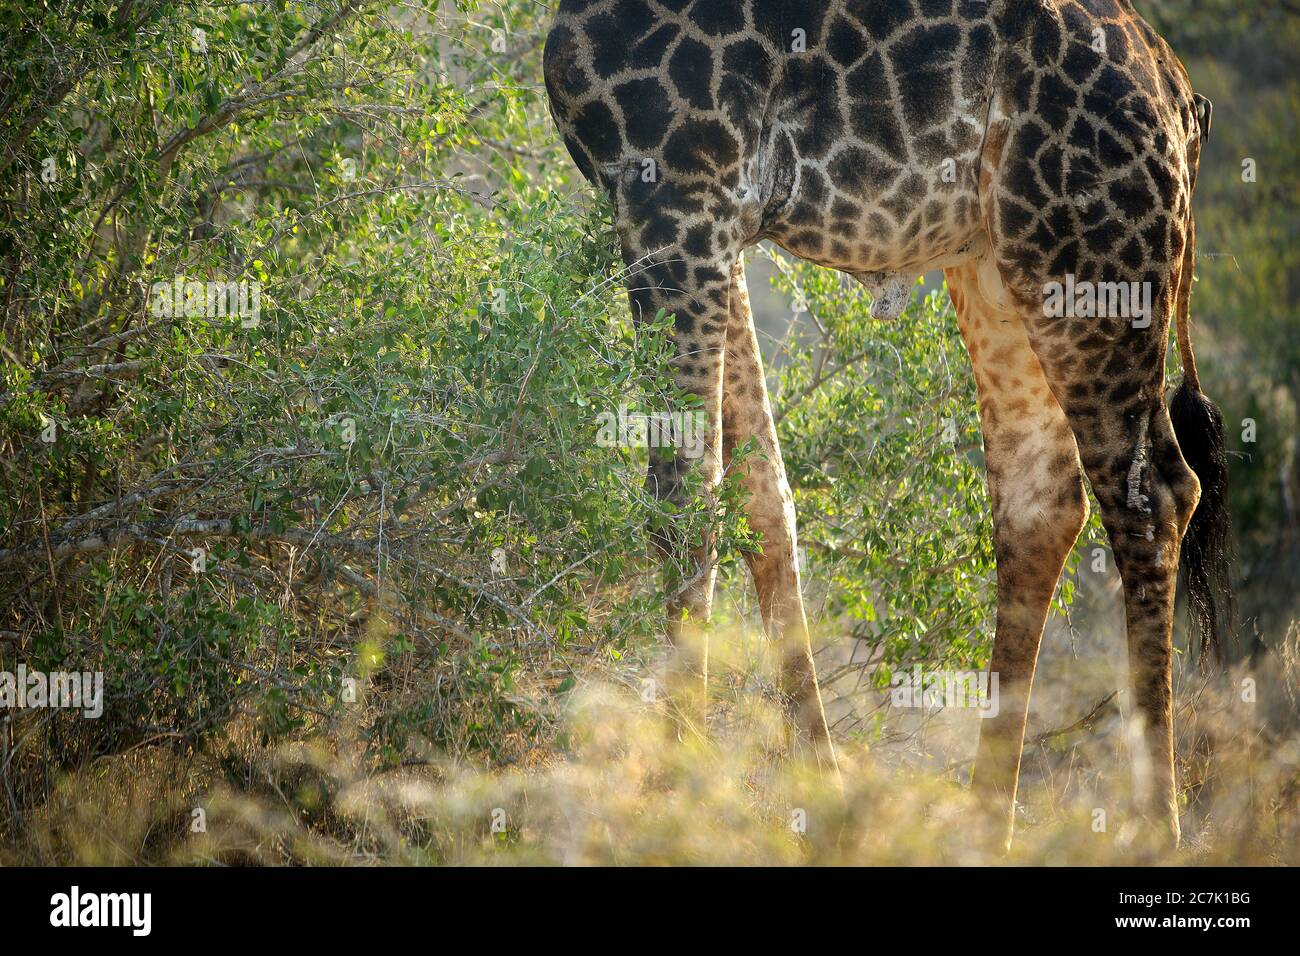 Giraffe, Giraffa camelopardalis, im Kruger Nationalpark, Südafrika die Giraffe ist ein afrikanisches, gleichgezogenes Huftier-Säugetier, das höchste lebende Landtier und das größte Wiederkäuer, Stockfoto